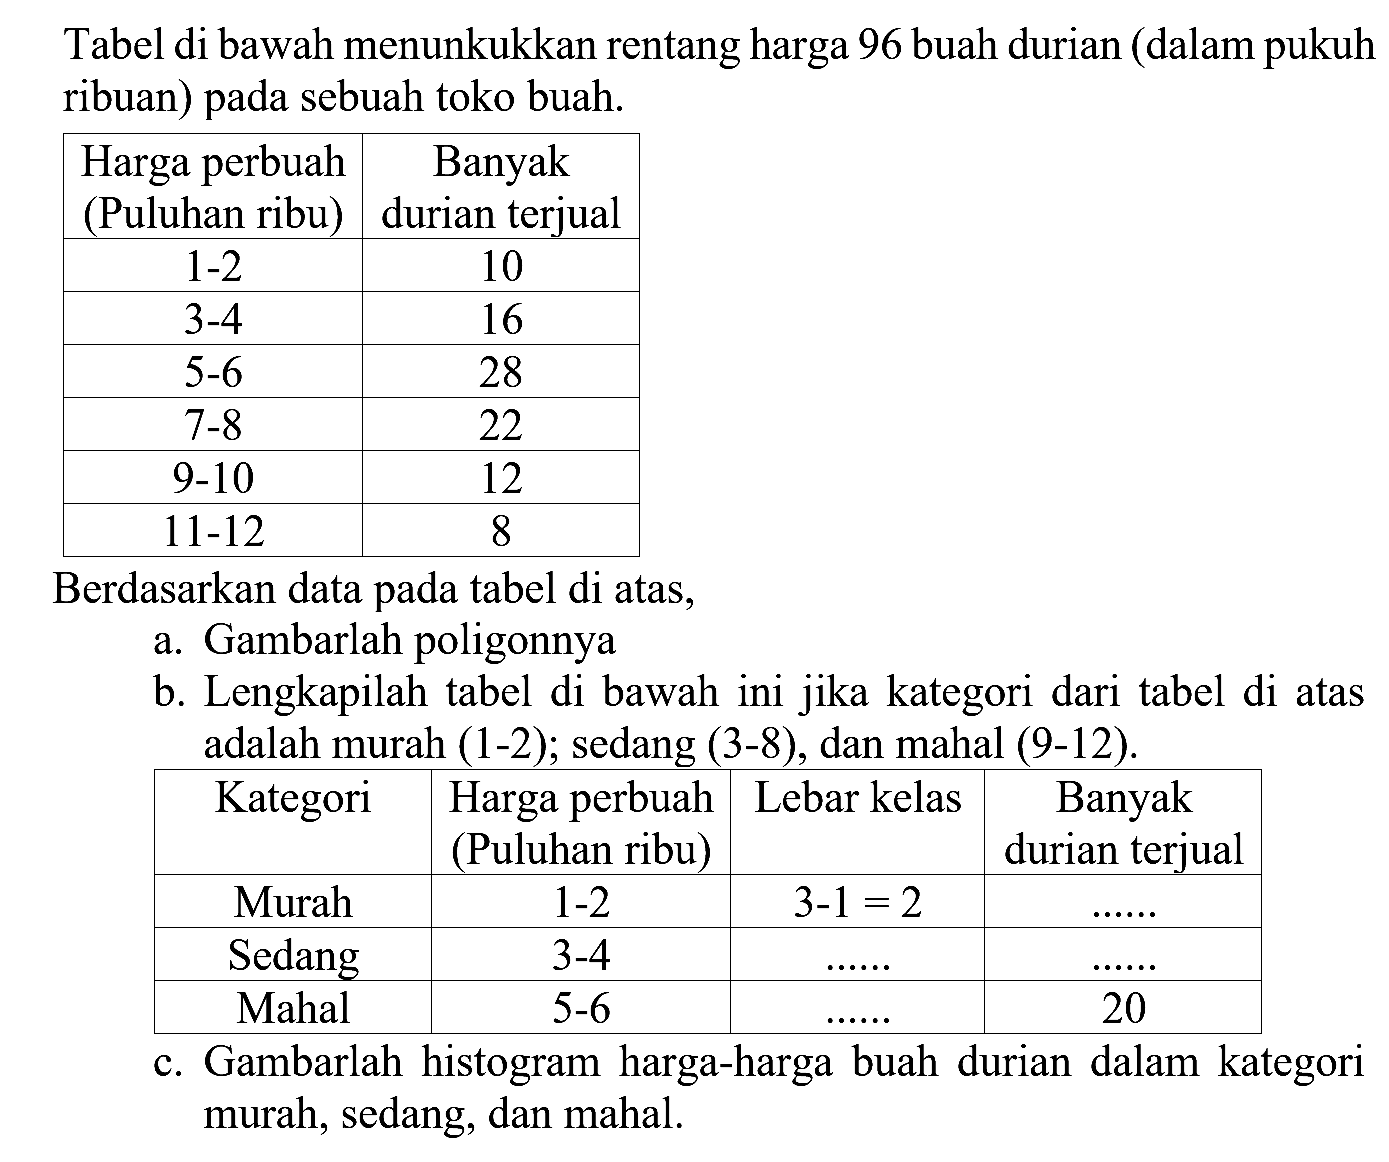 Tabel di bawah menunkukkan rentang harga 96 buah durian (dalam pukuh ribuan) pada sebuah toko buah. Harga perbuah Banyak (Puluhan ribu) durian terjual 1-2 10 3-4 16 5-6 28 7-8 22 9-10 12 11-12 8 Berdasarkan data pada tabel di atas, a. Gambarlah poligonnya b. Lengkapilah tabel di bawah ini jika kategori dari tabel di atas adalah murah (1-2); sedang (3-8) dan mahal (9-12). Kategori Harga perbuah Lebar kelas Banyak (Puluhan ribu) durian terjual Murah 1-2 3-1=2 Sedang 3-4 Mahal 5-6 20 c. Gambarlah histogram harga-harga buah durian dalam kategori murah, sedang, dan mahal.